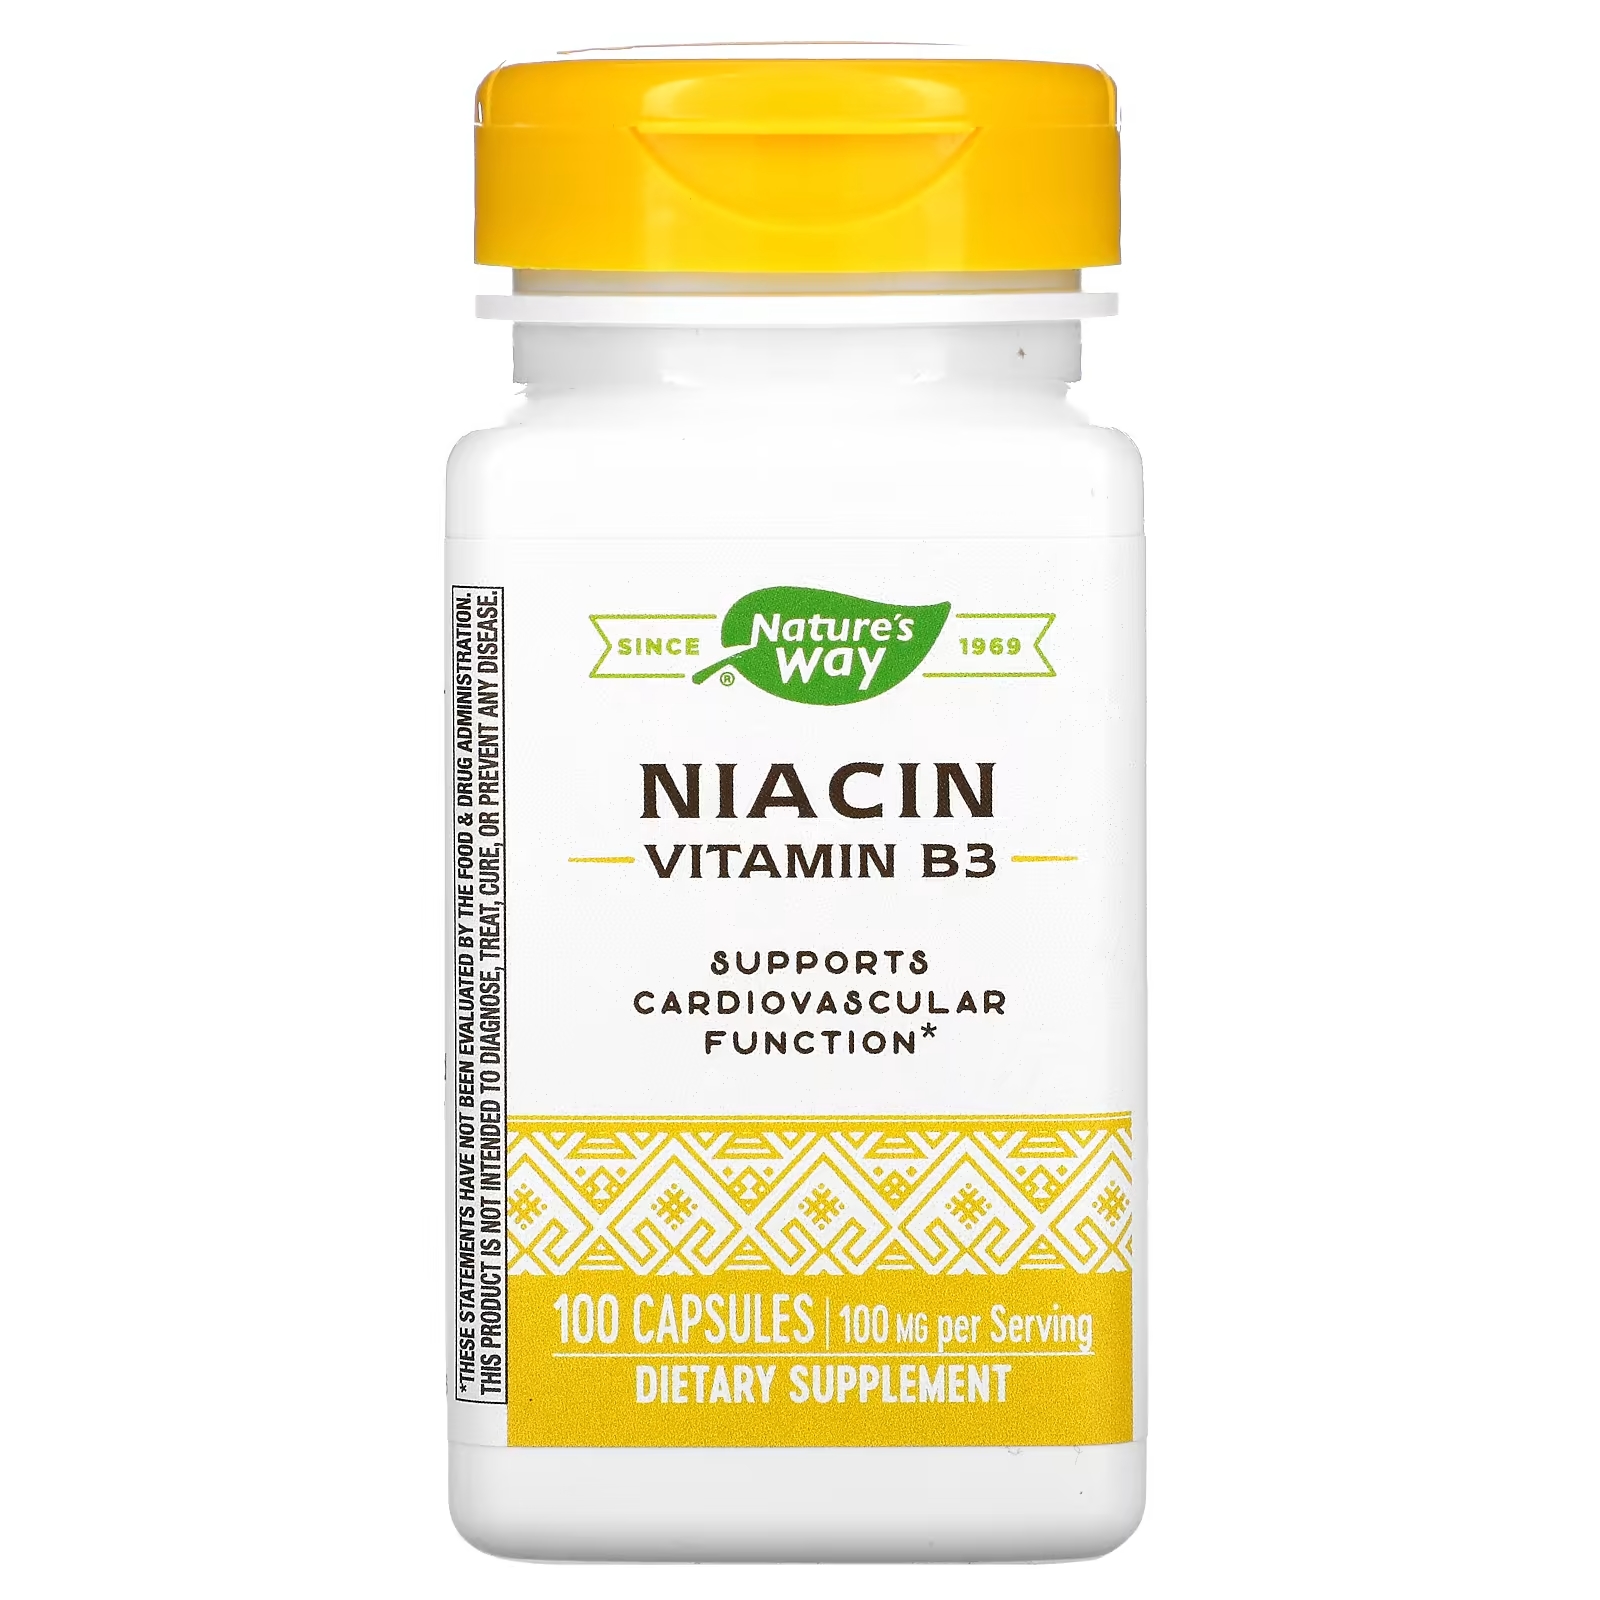 Nature's Way ниацин витамин В3 100 мг, 100 капсул solgar ниацин витамин в3 100 мг 100 таблеток